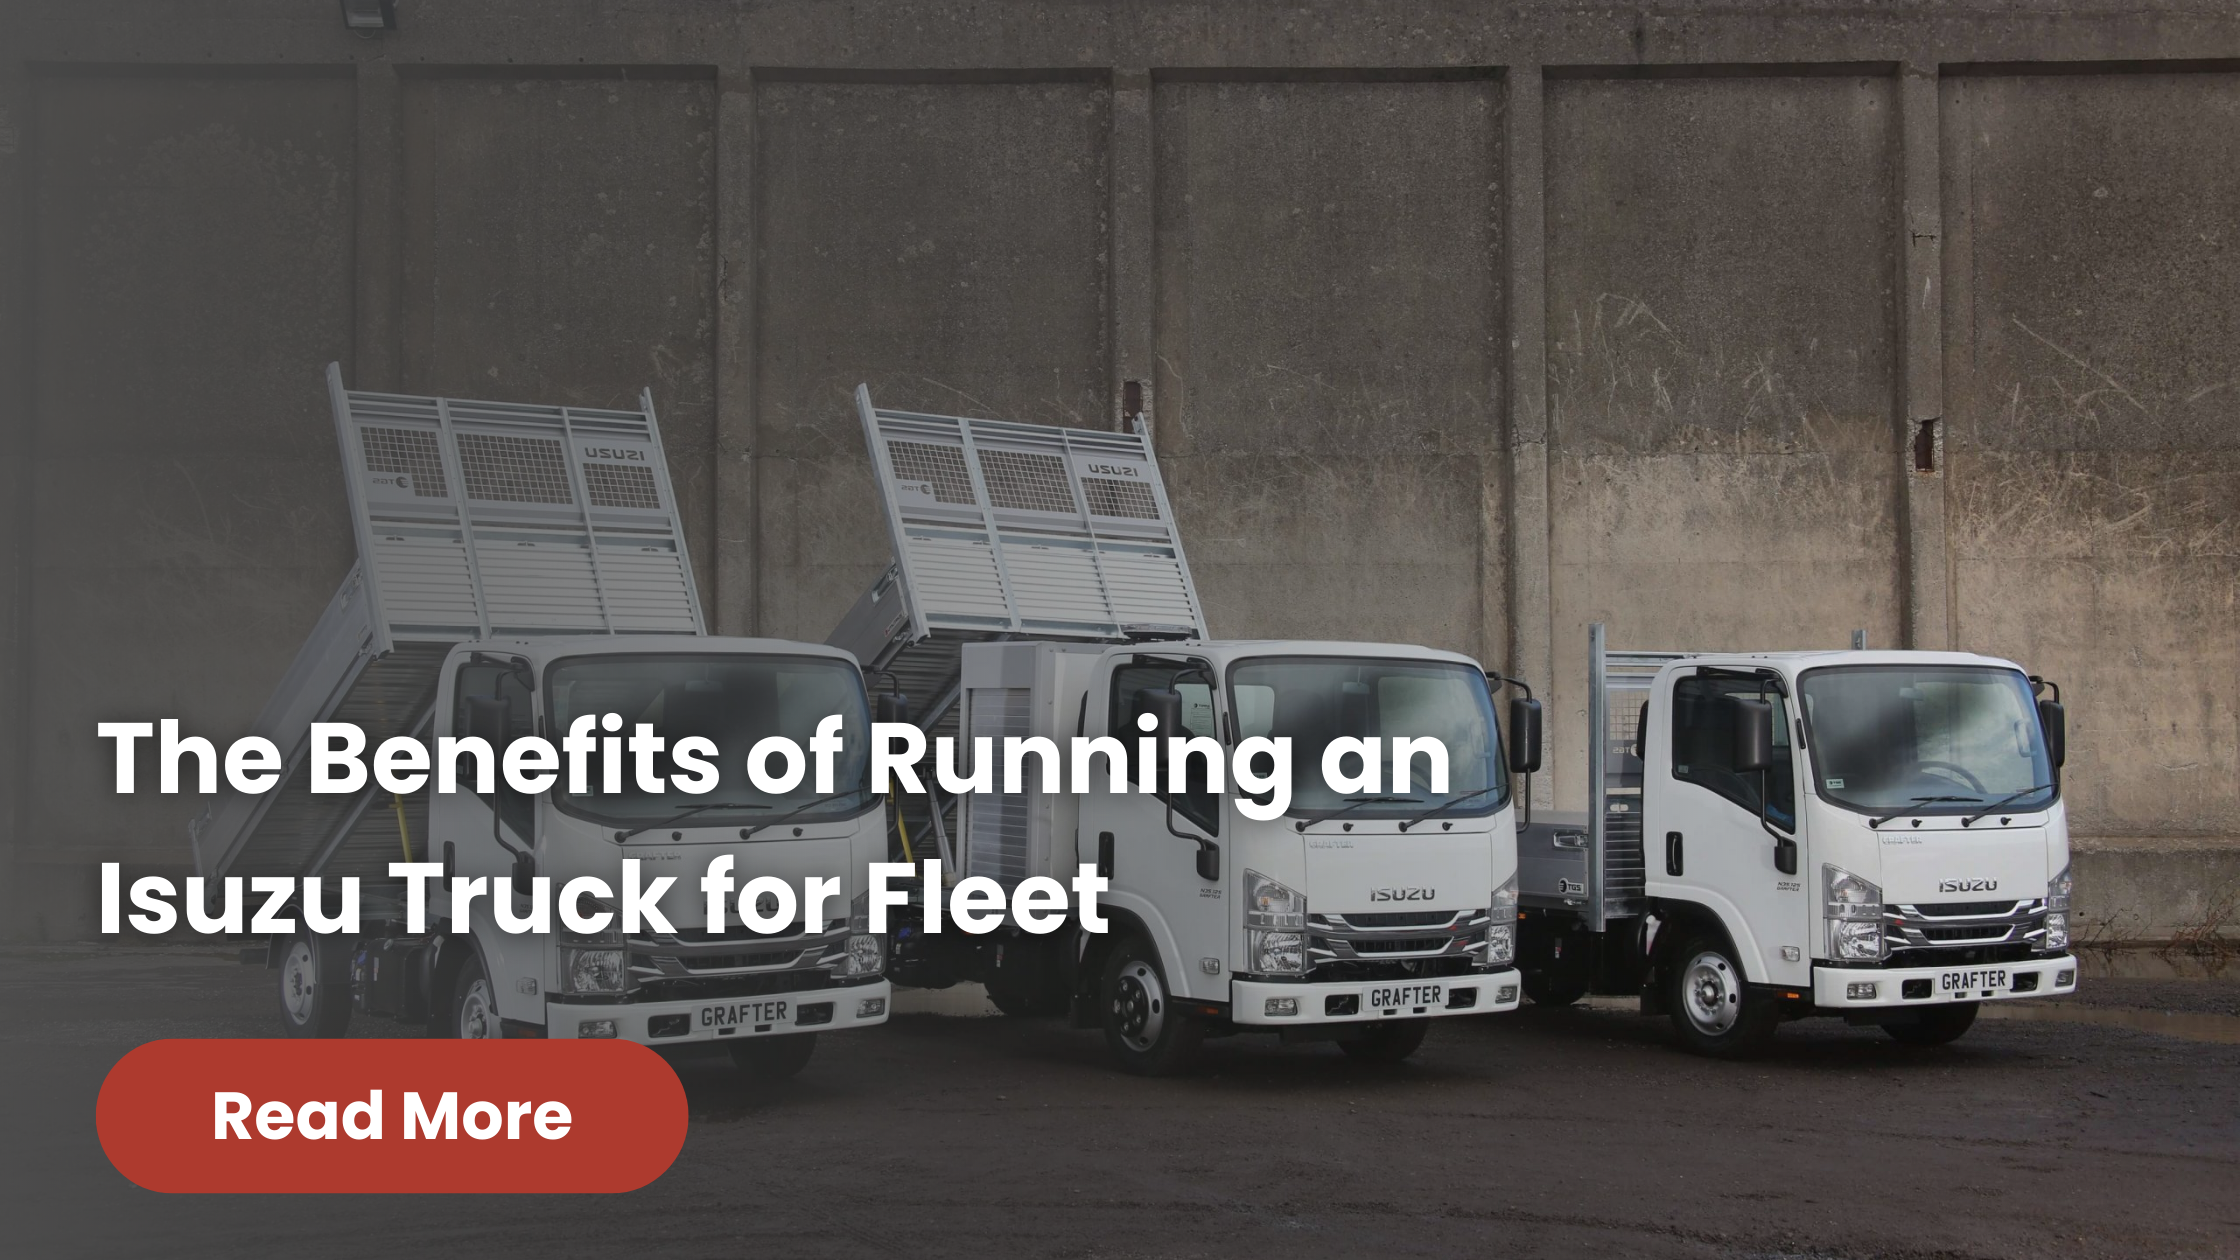 The Benefits of Running an Isuzu Truck for Fleet